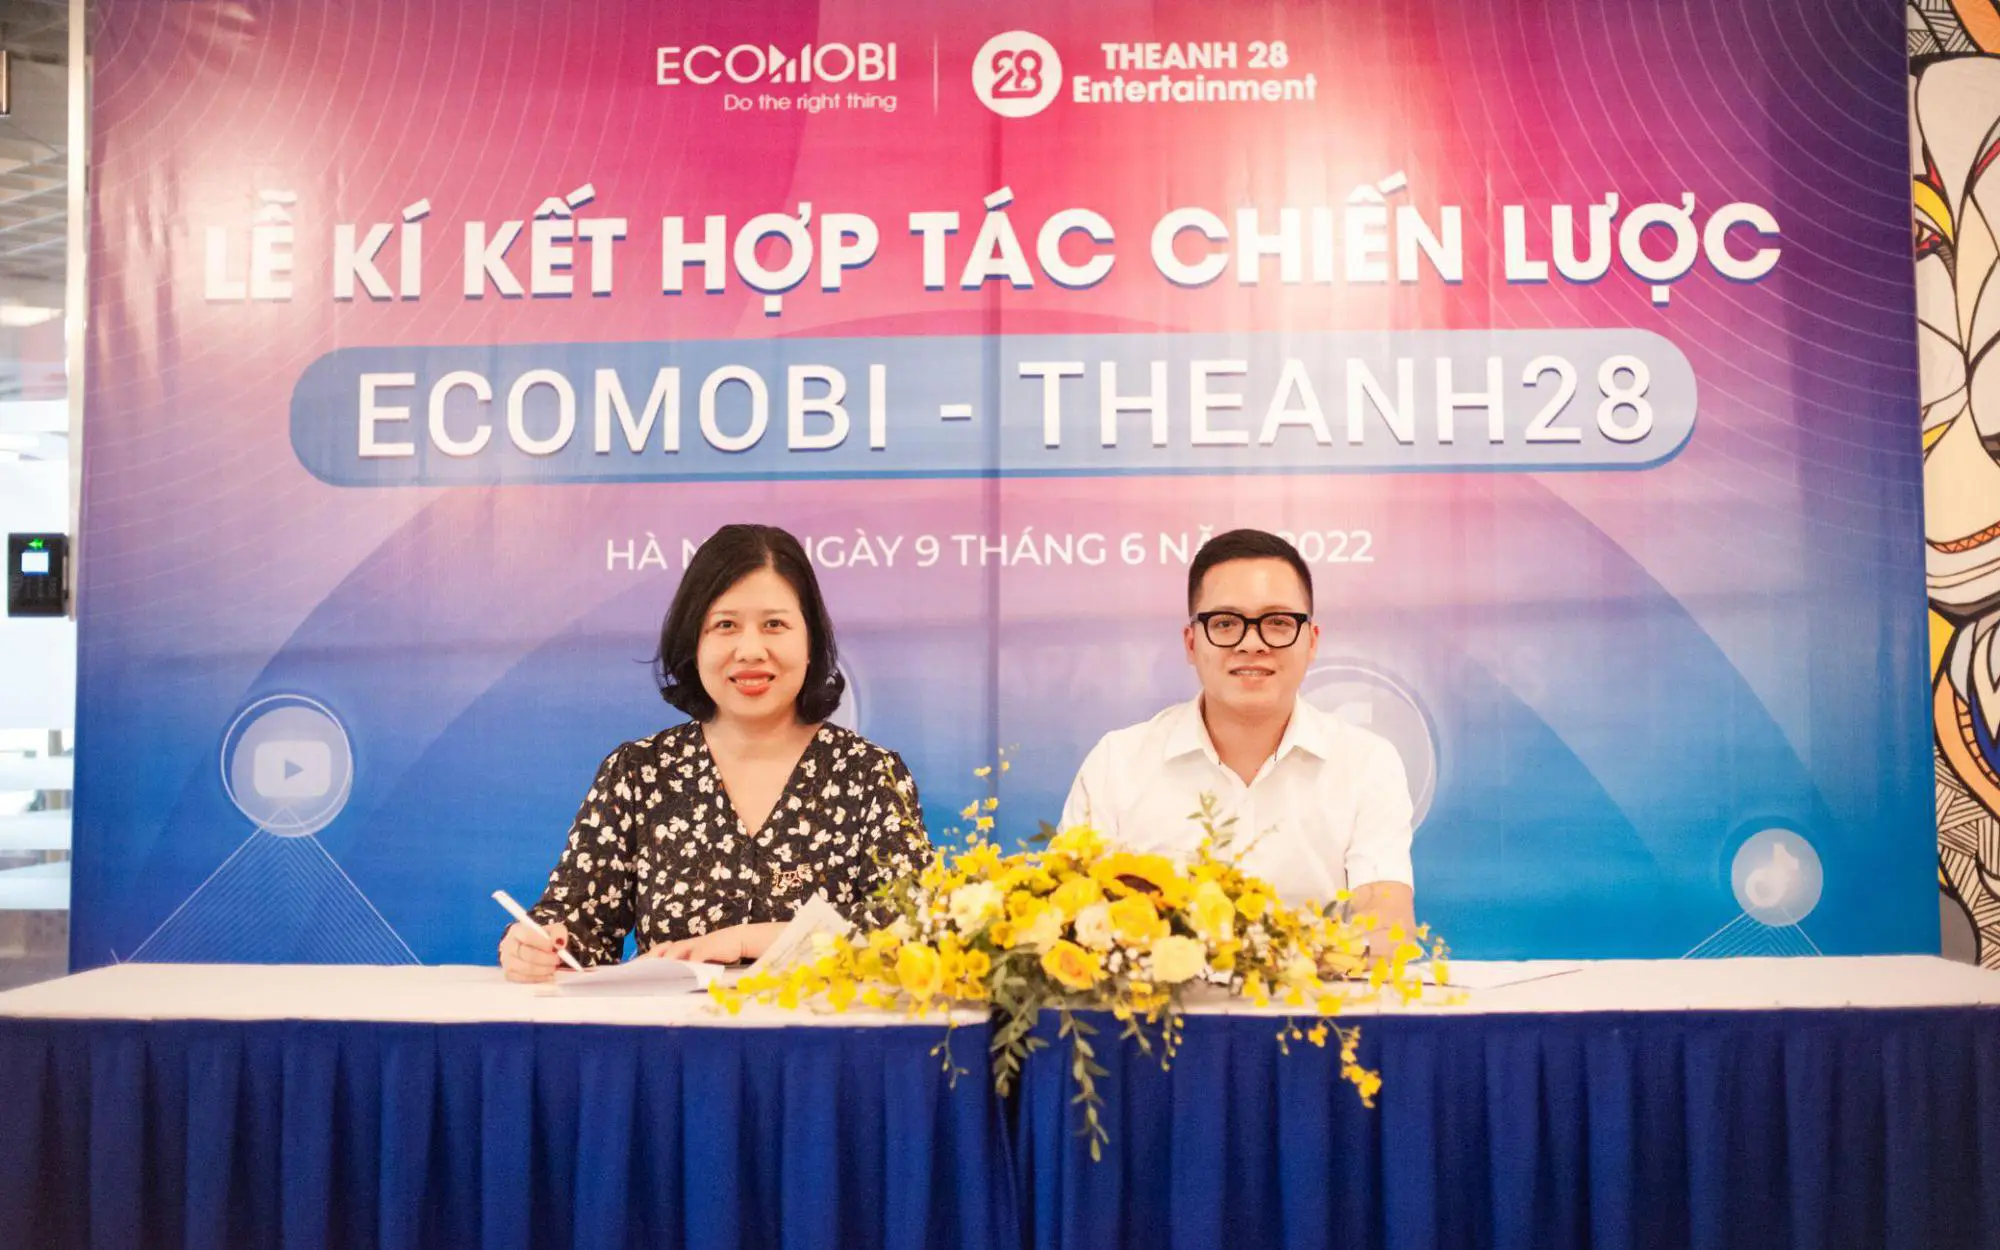 Ecomobi ký kết hợp tác chiến lược với Theanh28 Entertainment